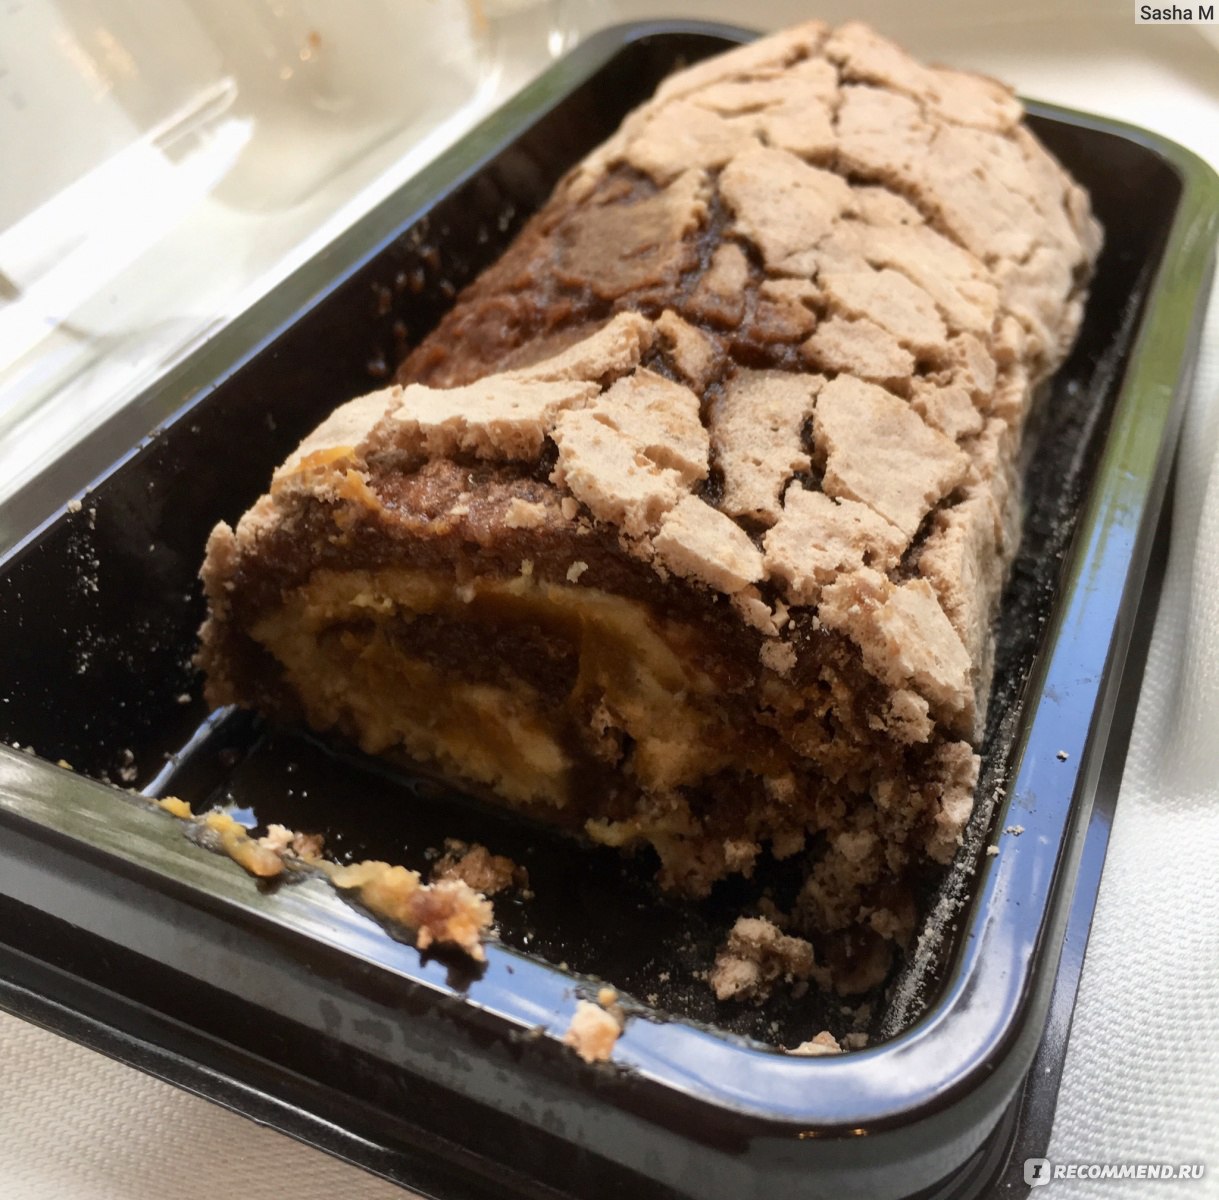 Рулет меренговый «Шоколад арахис карамель» от ВкусВилл отзывы